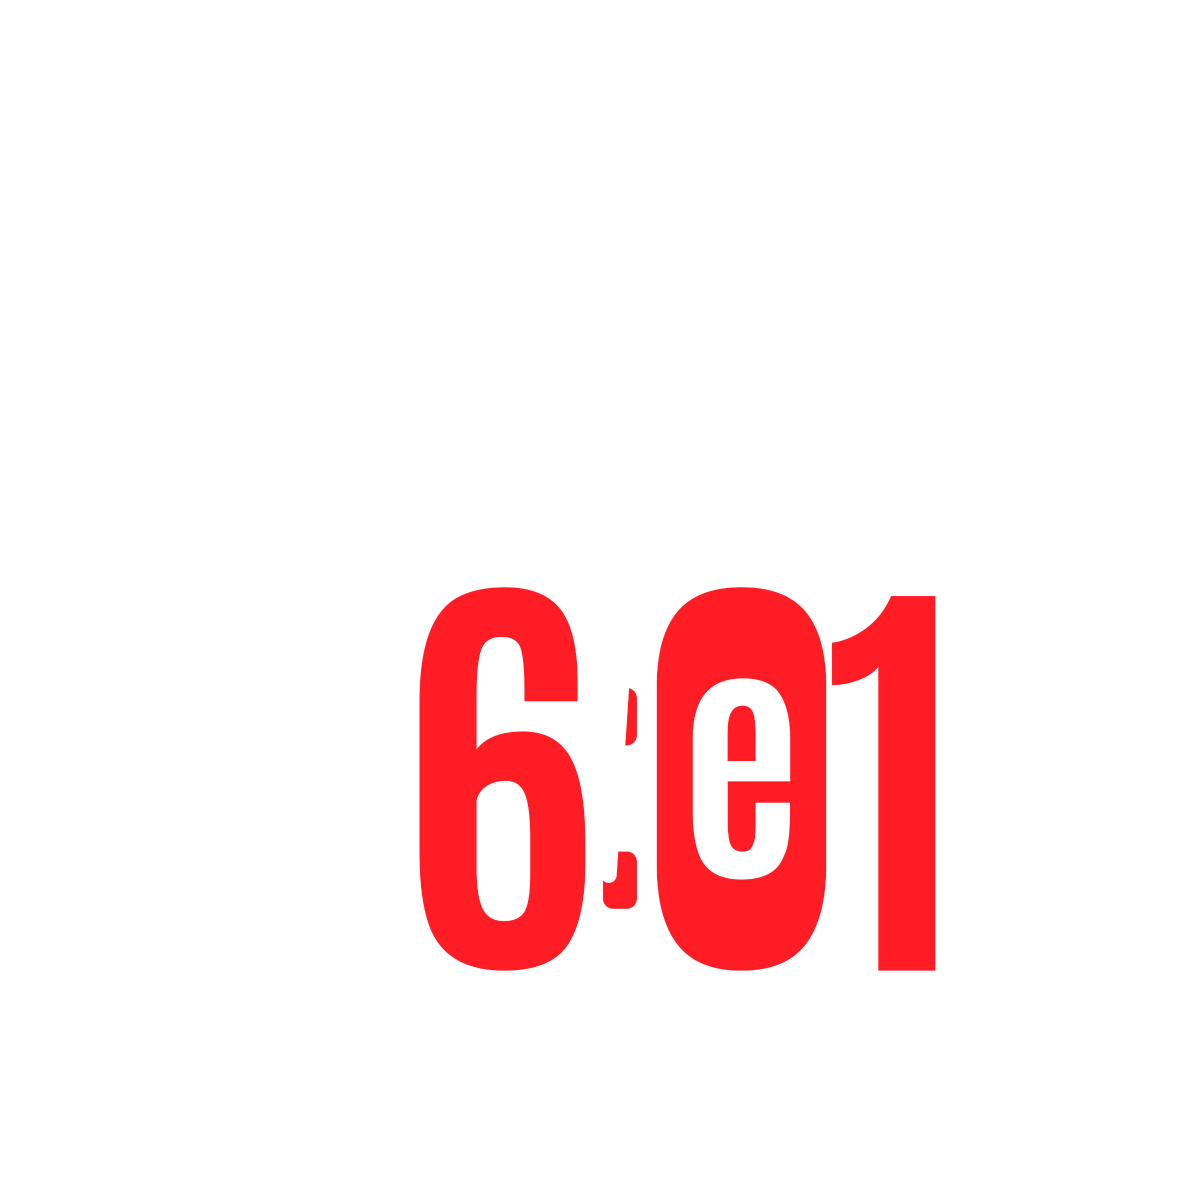 Clube #6e1